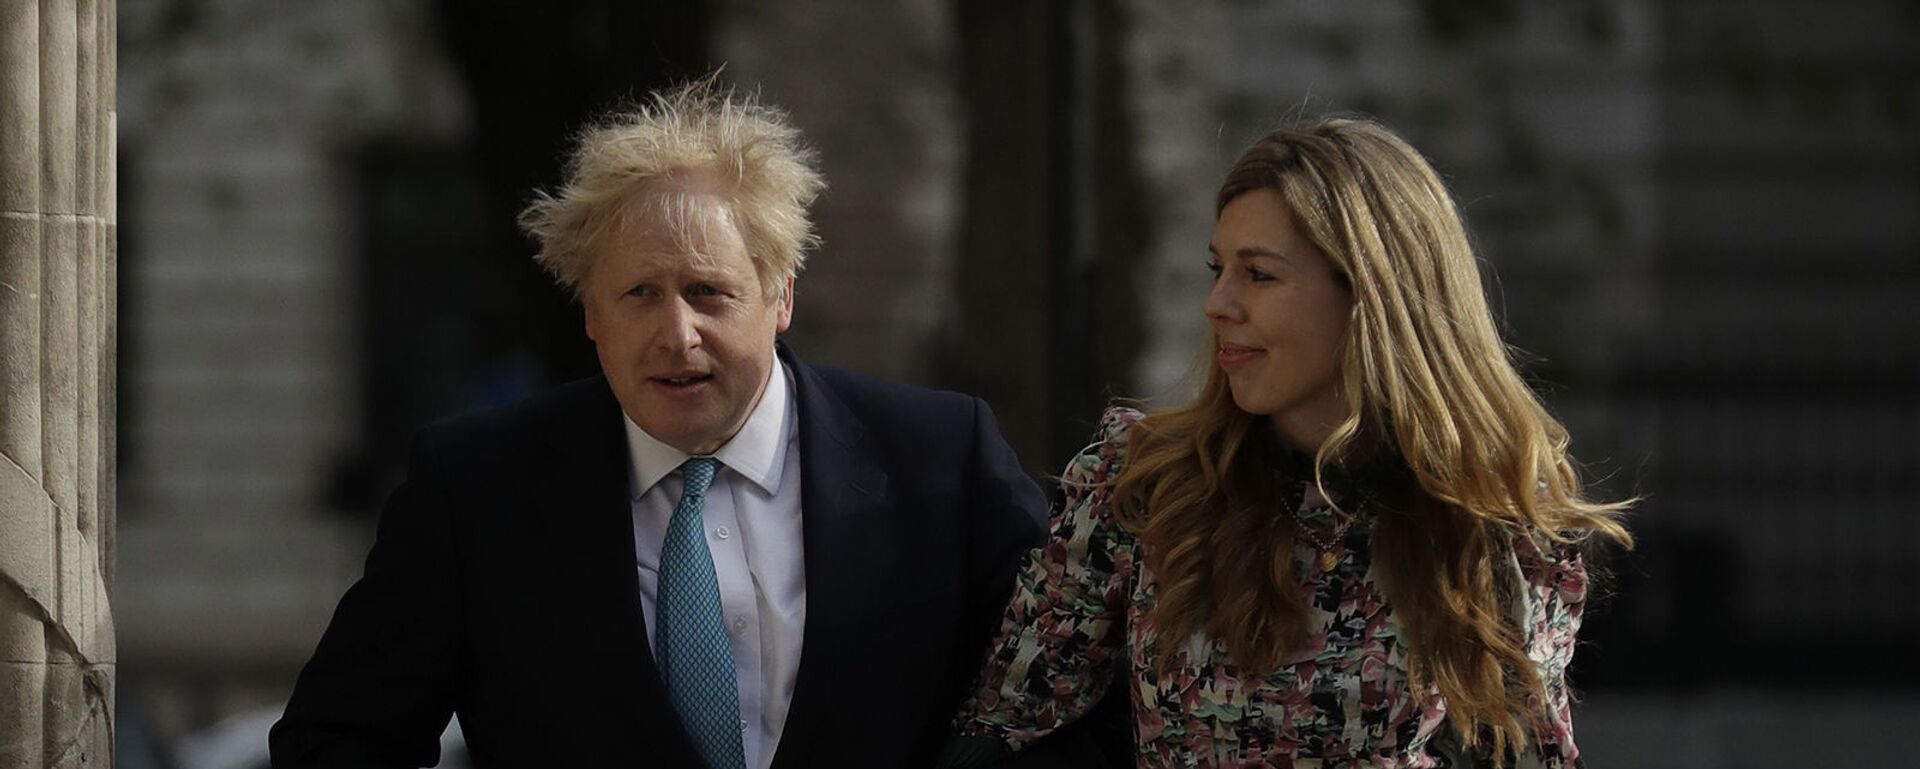 Премьер-министр Великобритании Борис Джонсон и Кэрри Саймондс прибывают на избирательный участок в Вестминстере - Sputnik Արմենիա, 1920, 31.05.2021